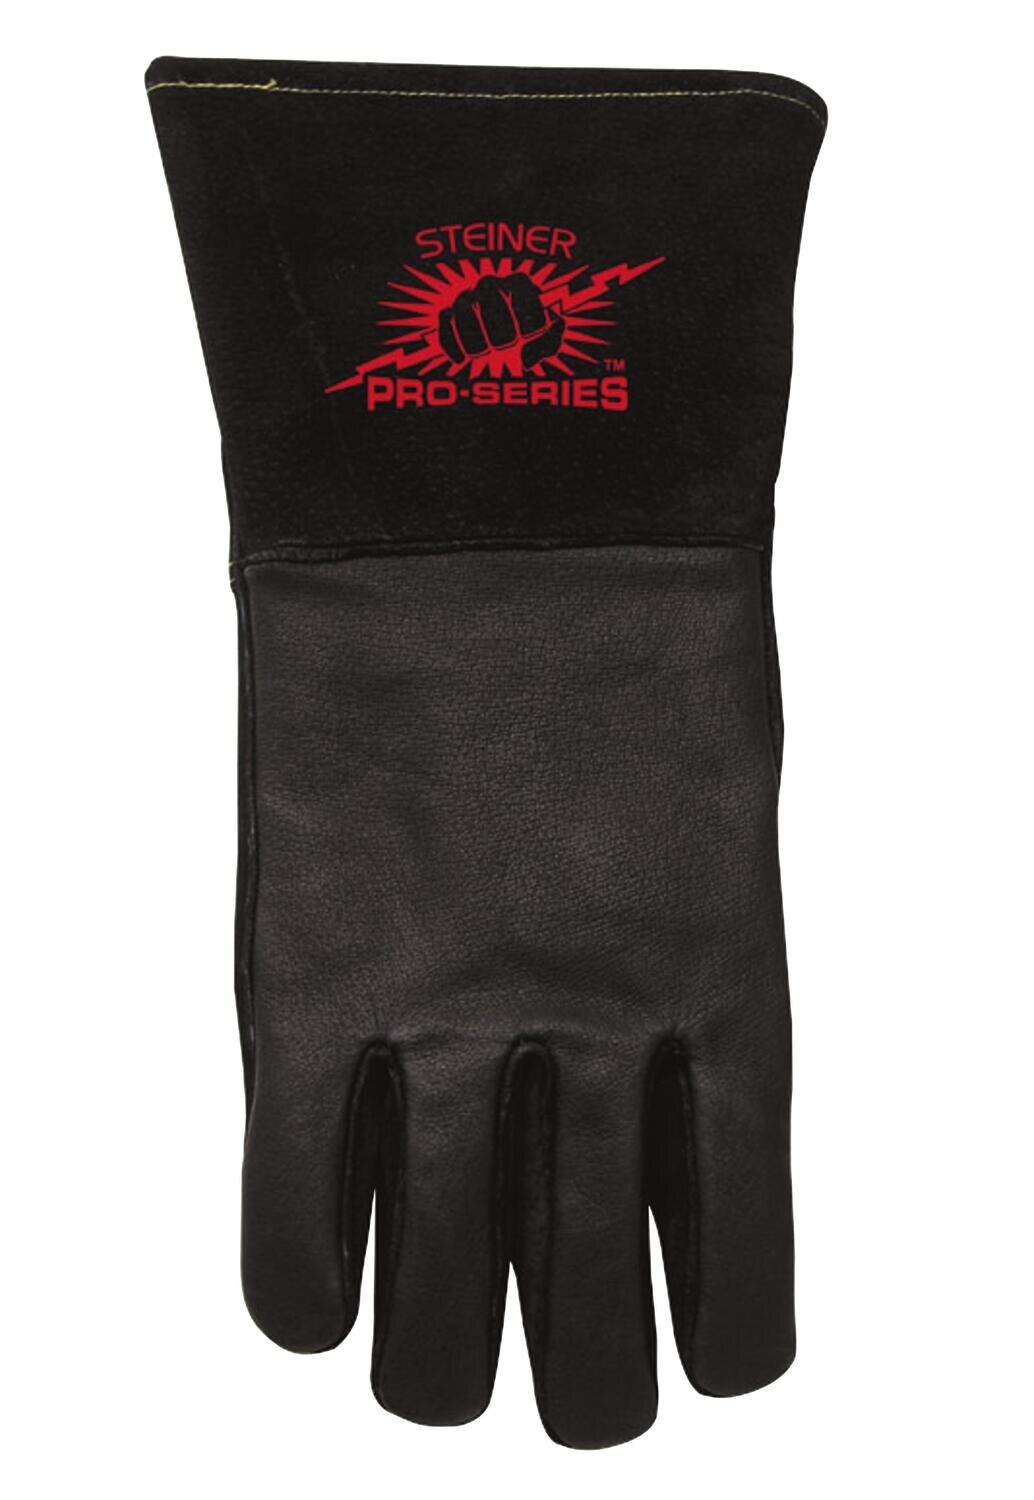 SNRP760X - MIG/Stick Welding Gloves